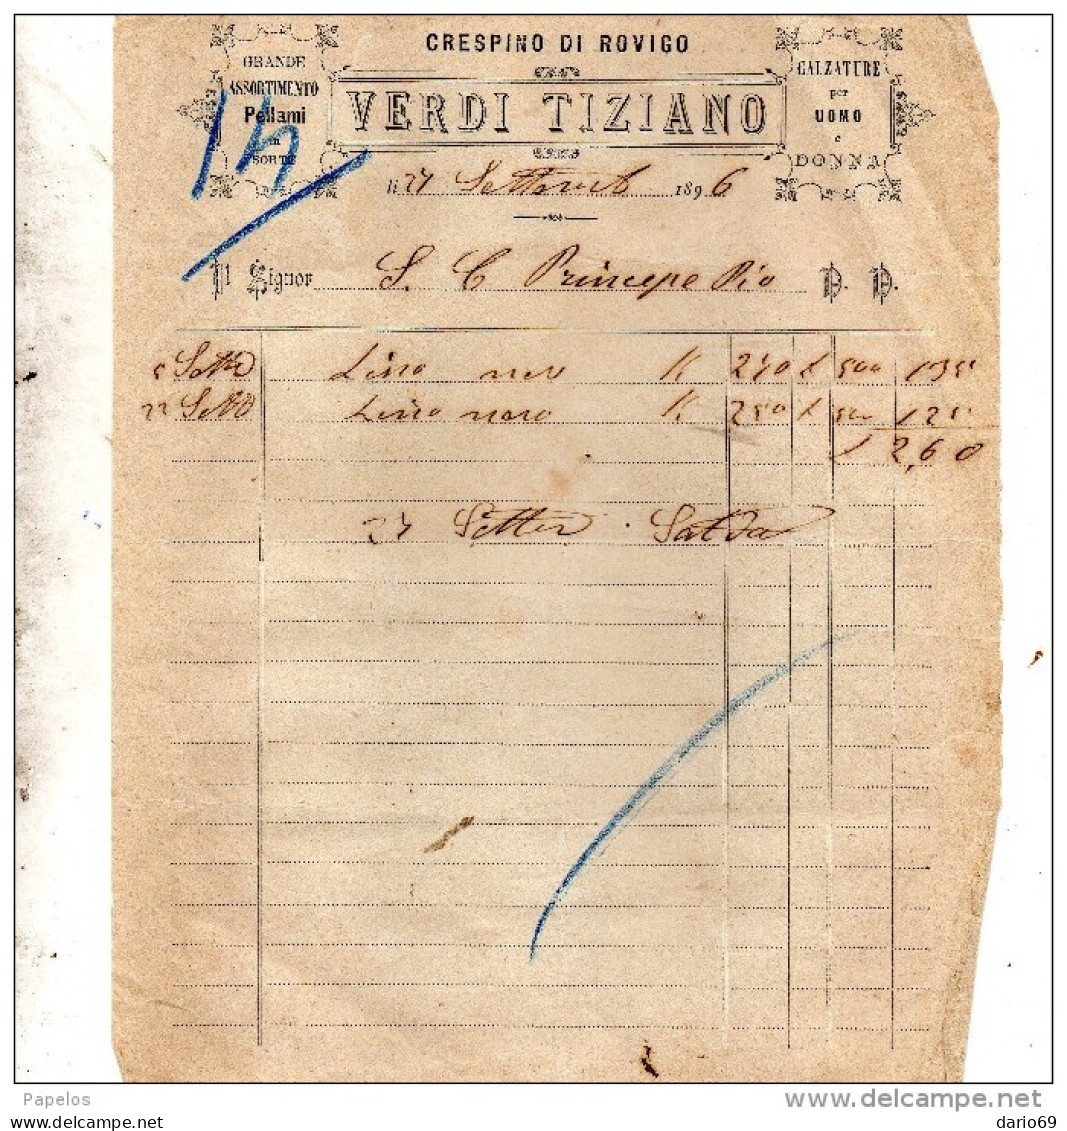 1896 CRESPINO ROVIGO - VERDI TIZIANO - CALZATURE PER UOMO - Italy